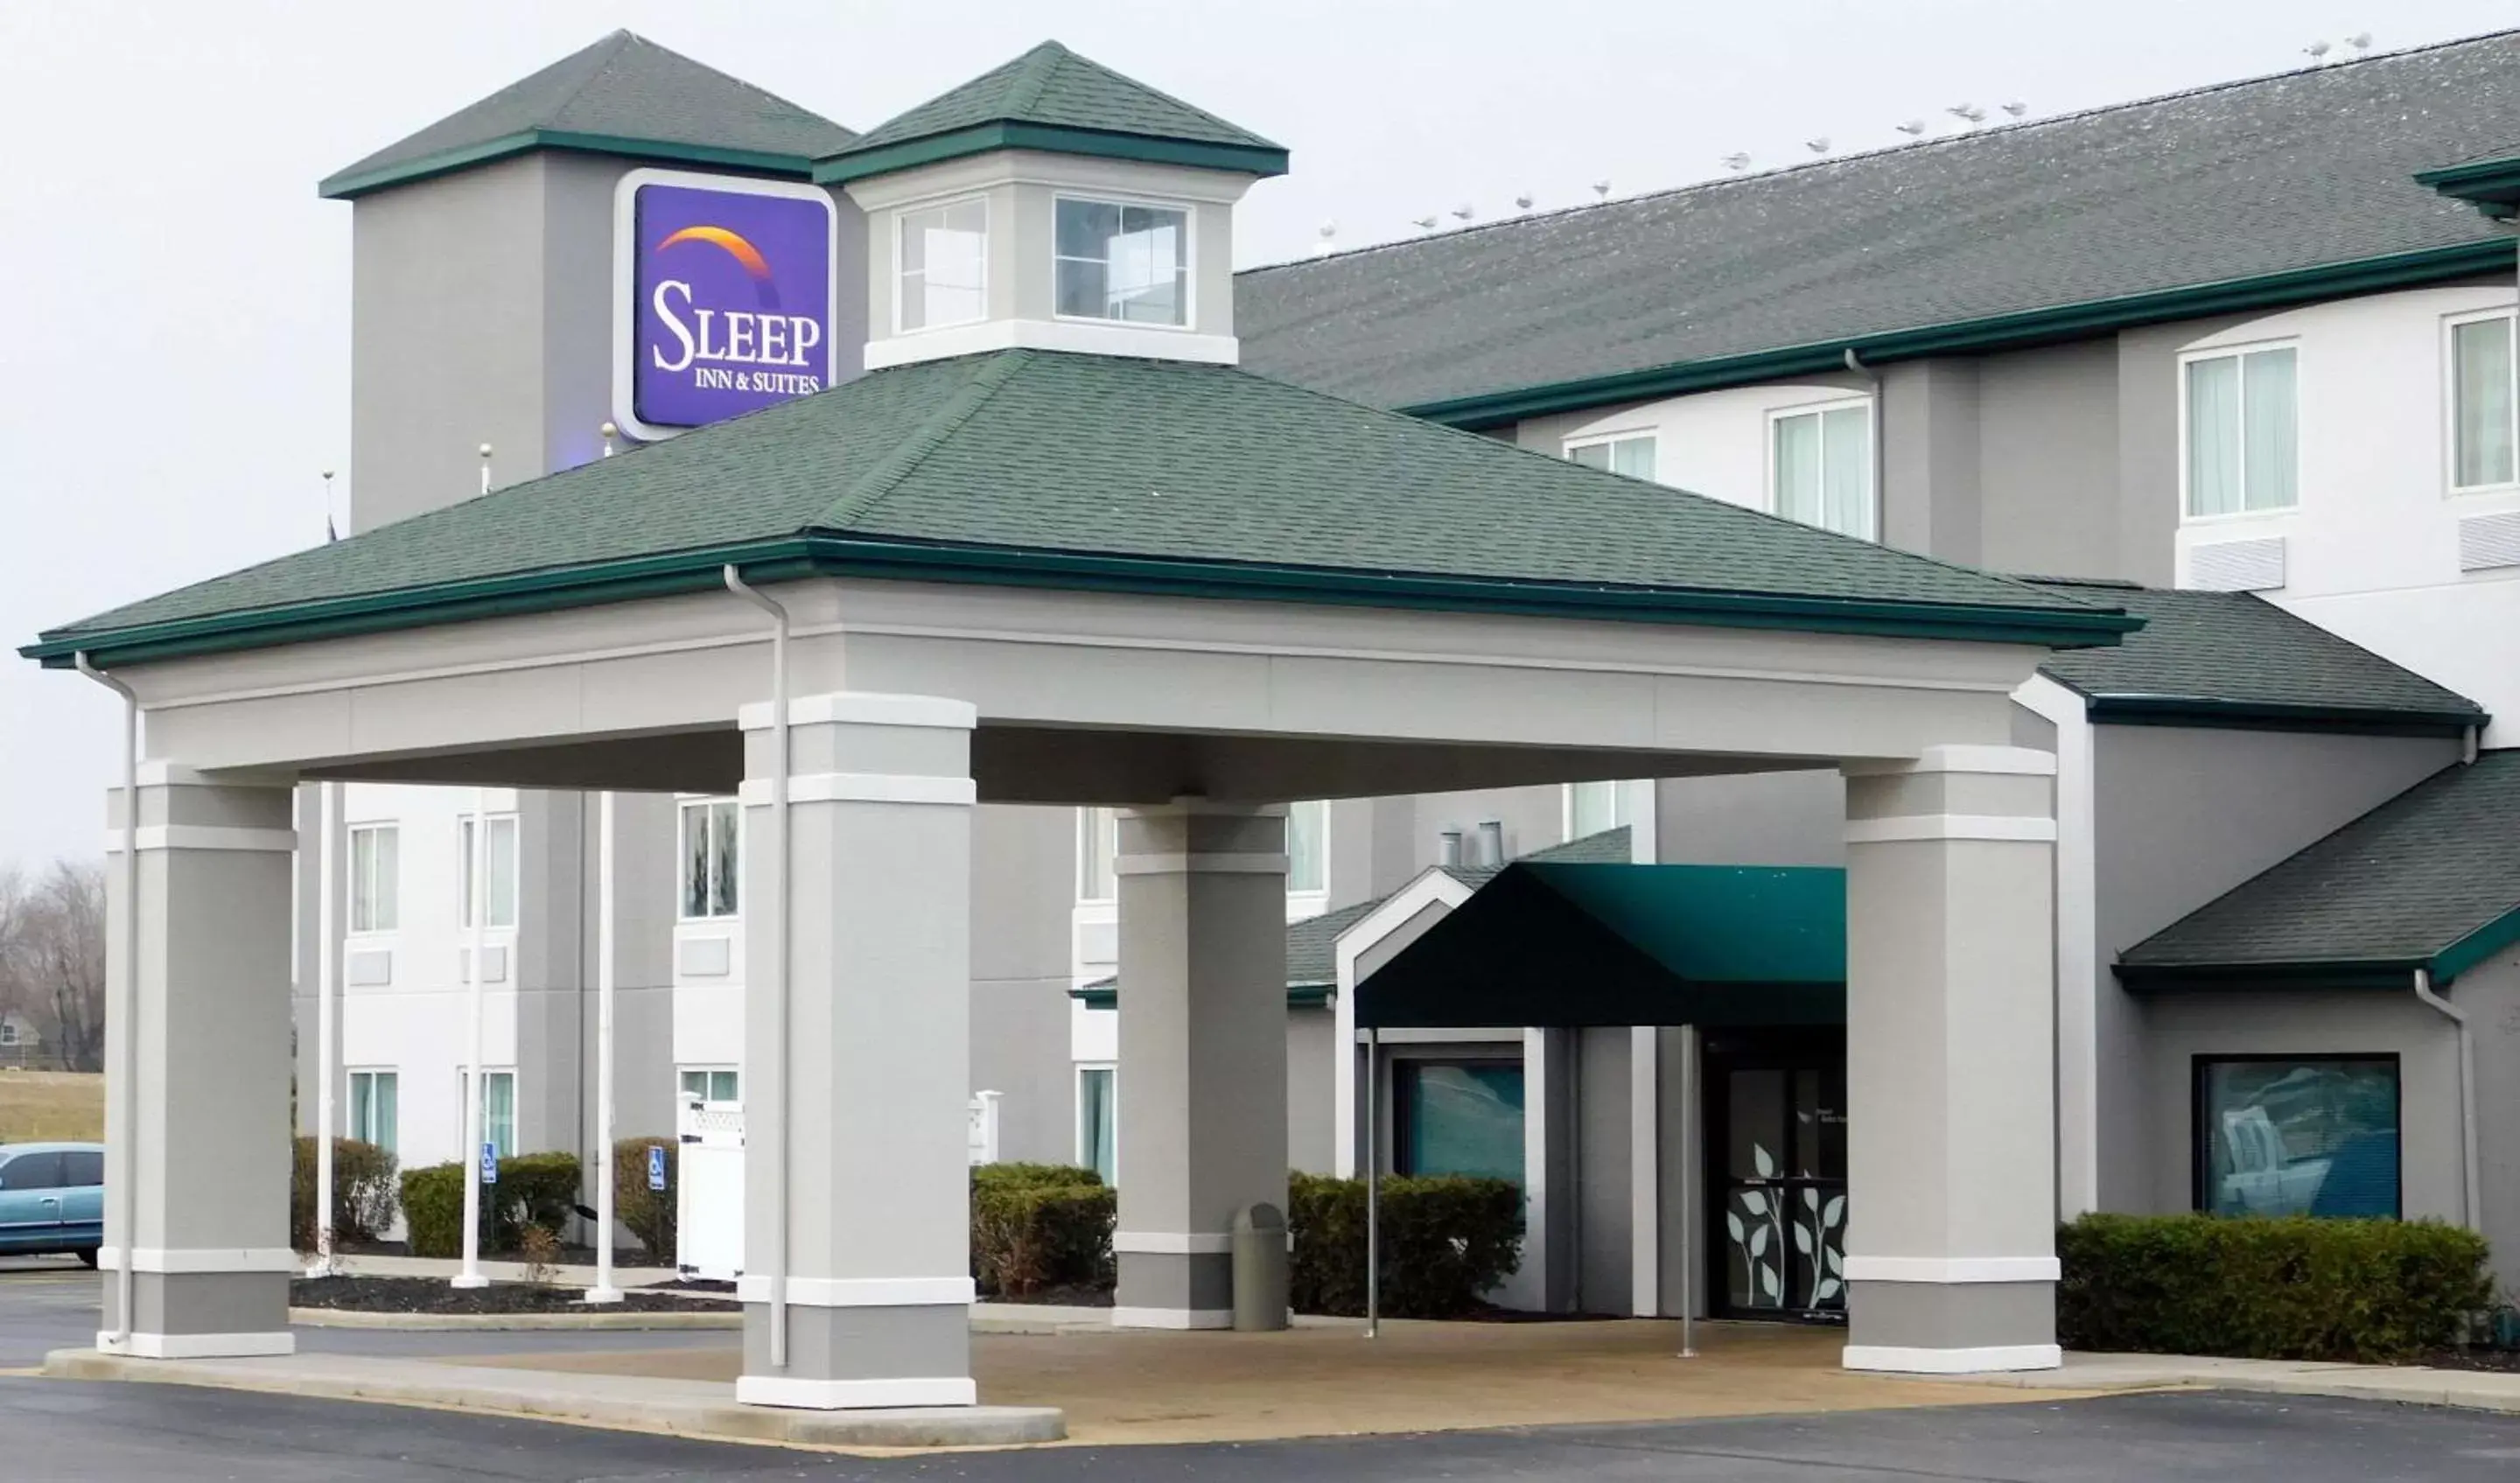 Property Building in Sleep Inn & Suites Oregon